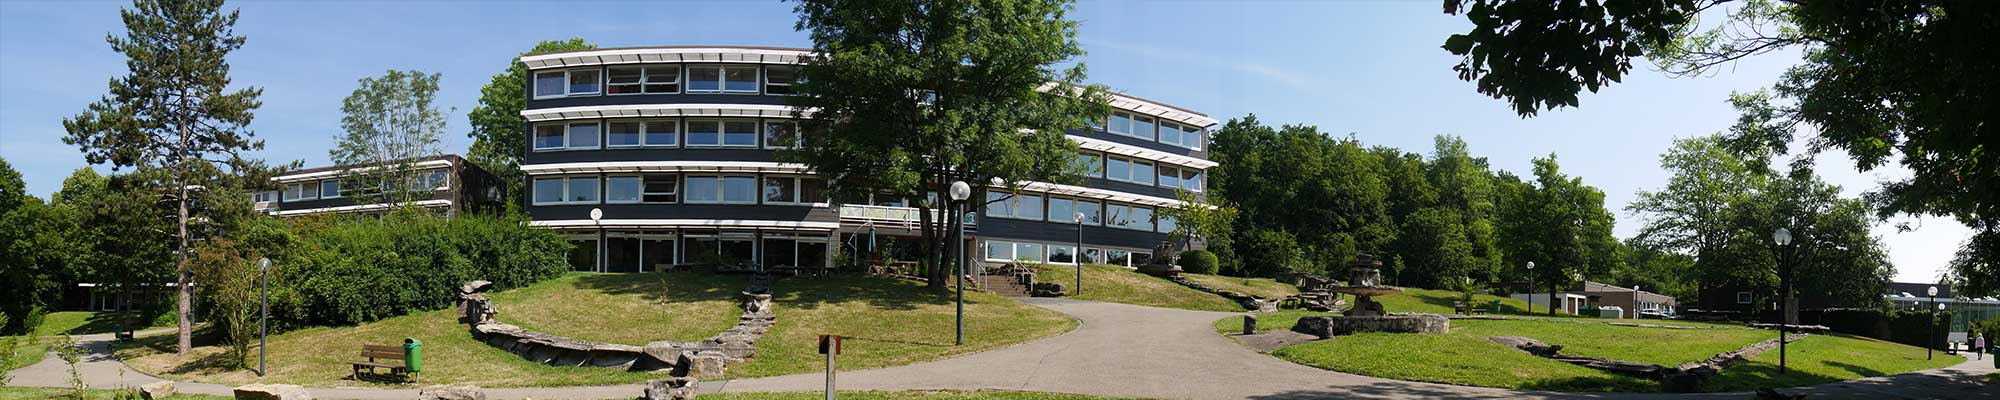 Kontakt - Eckenberg-Gymnasium Adelsheim